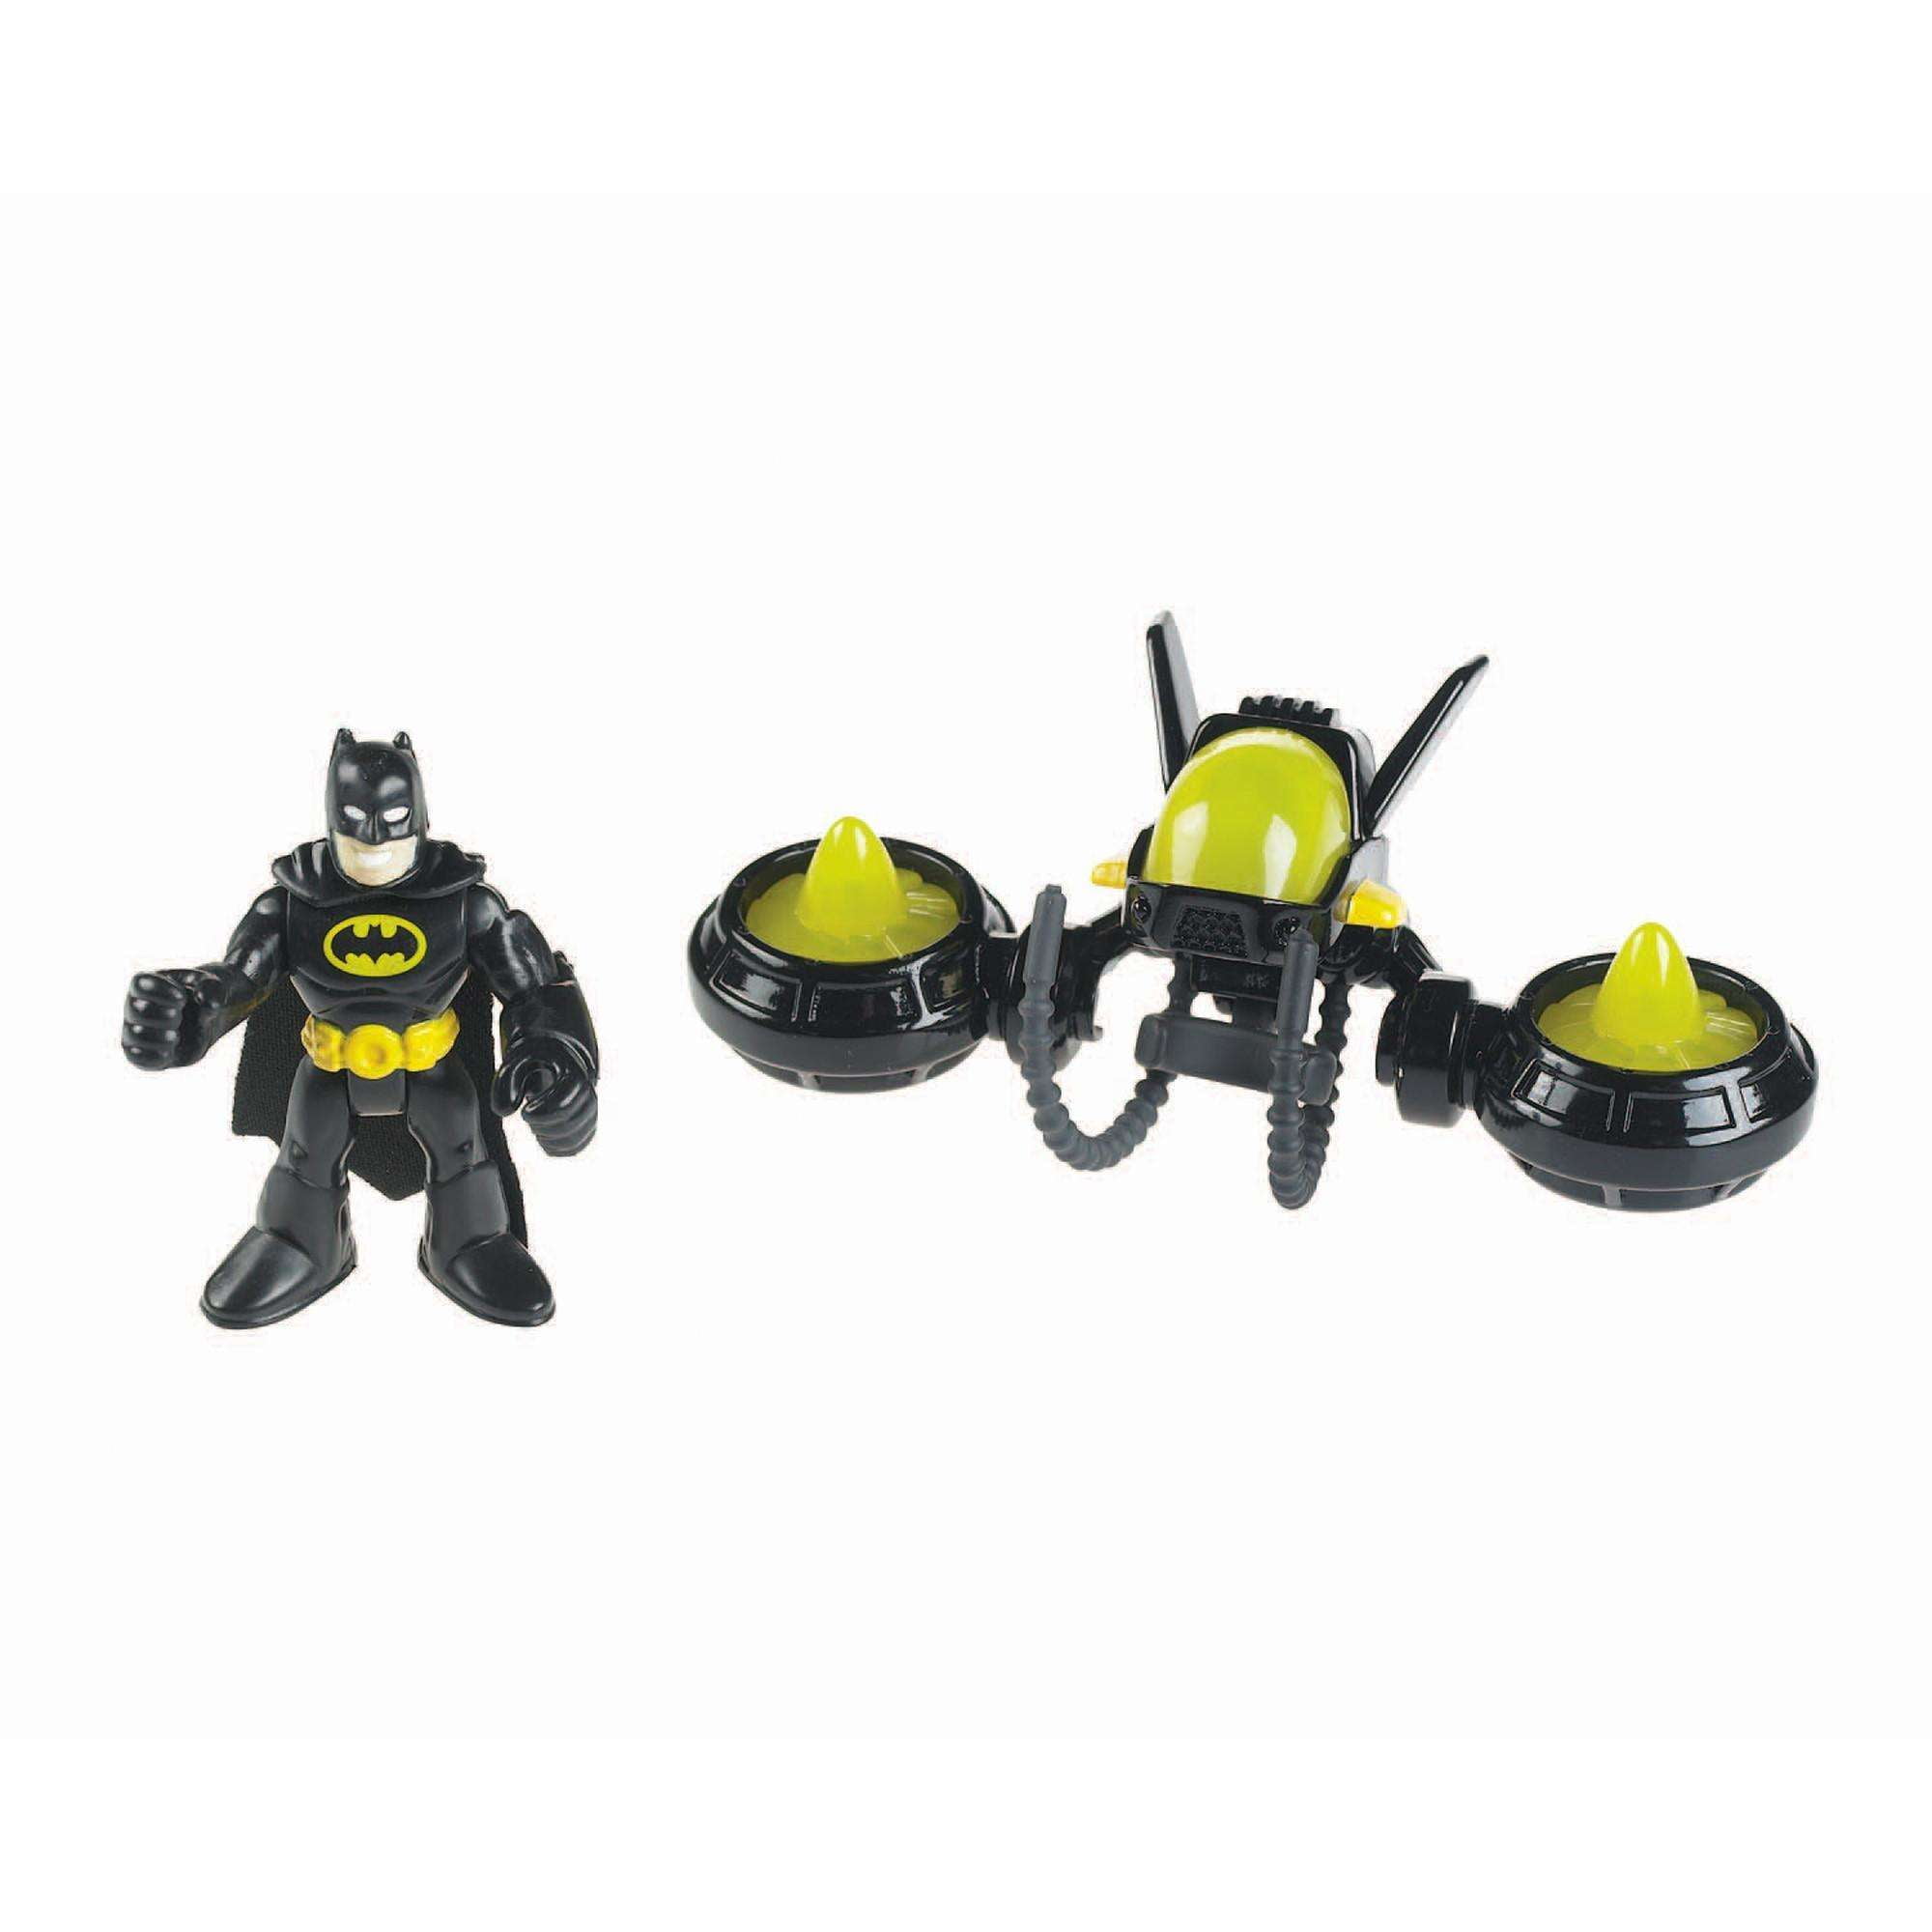 2pcs 3" Fisher-Price Imaginext DC Super Friends Battle Batman Batmen Figure Toys 